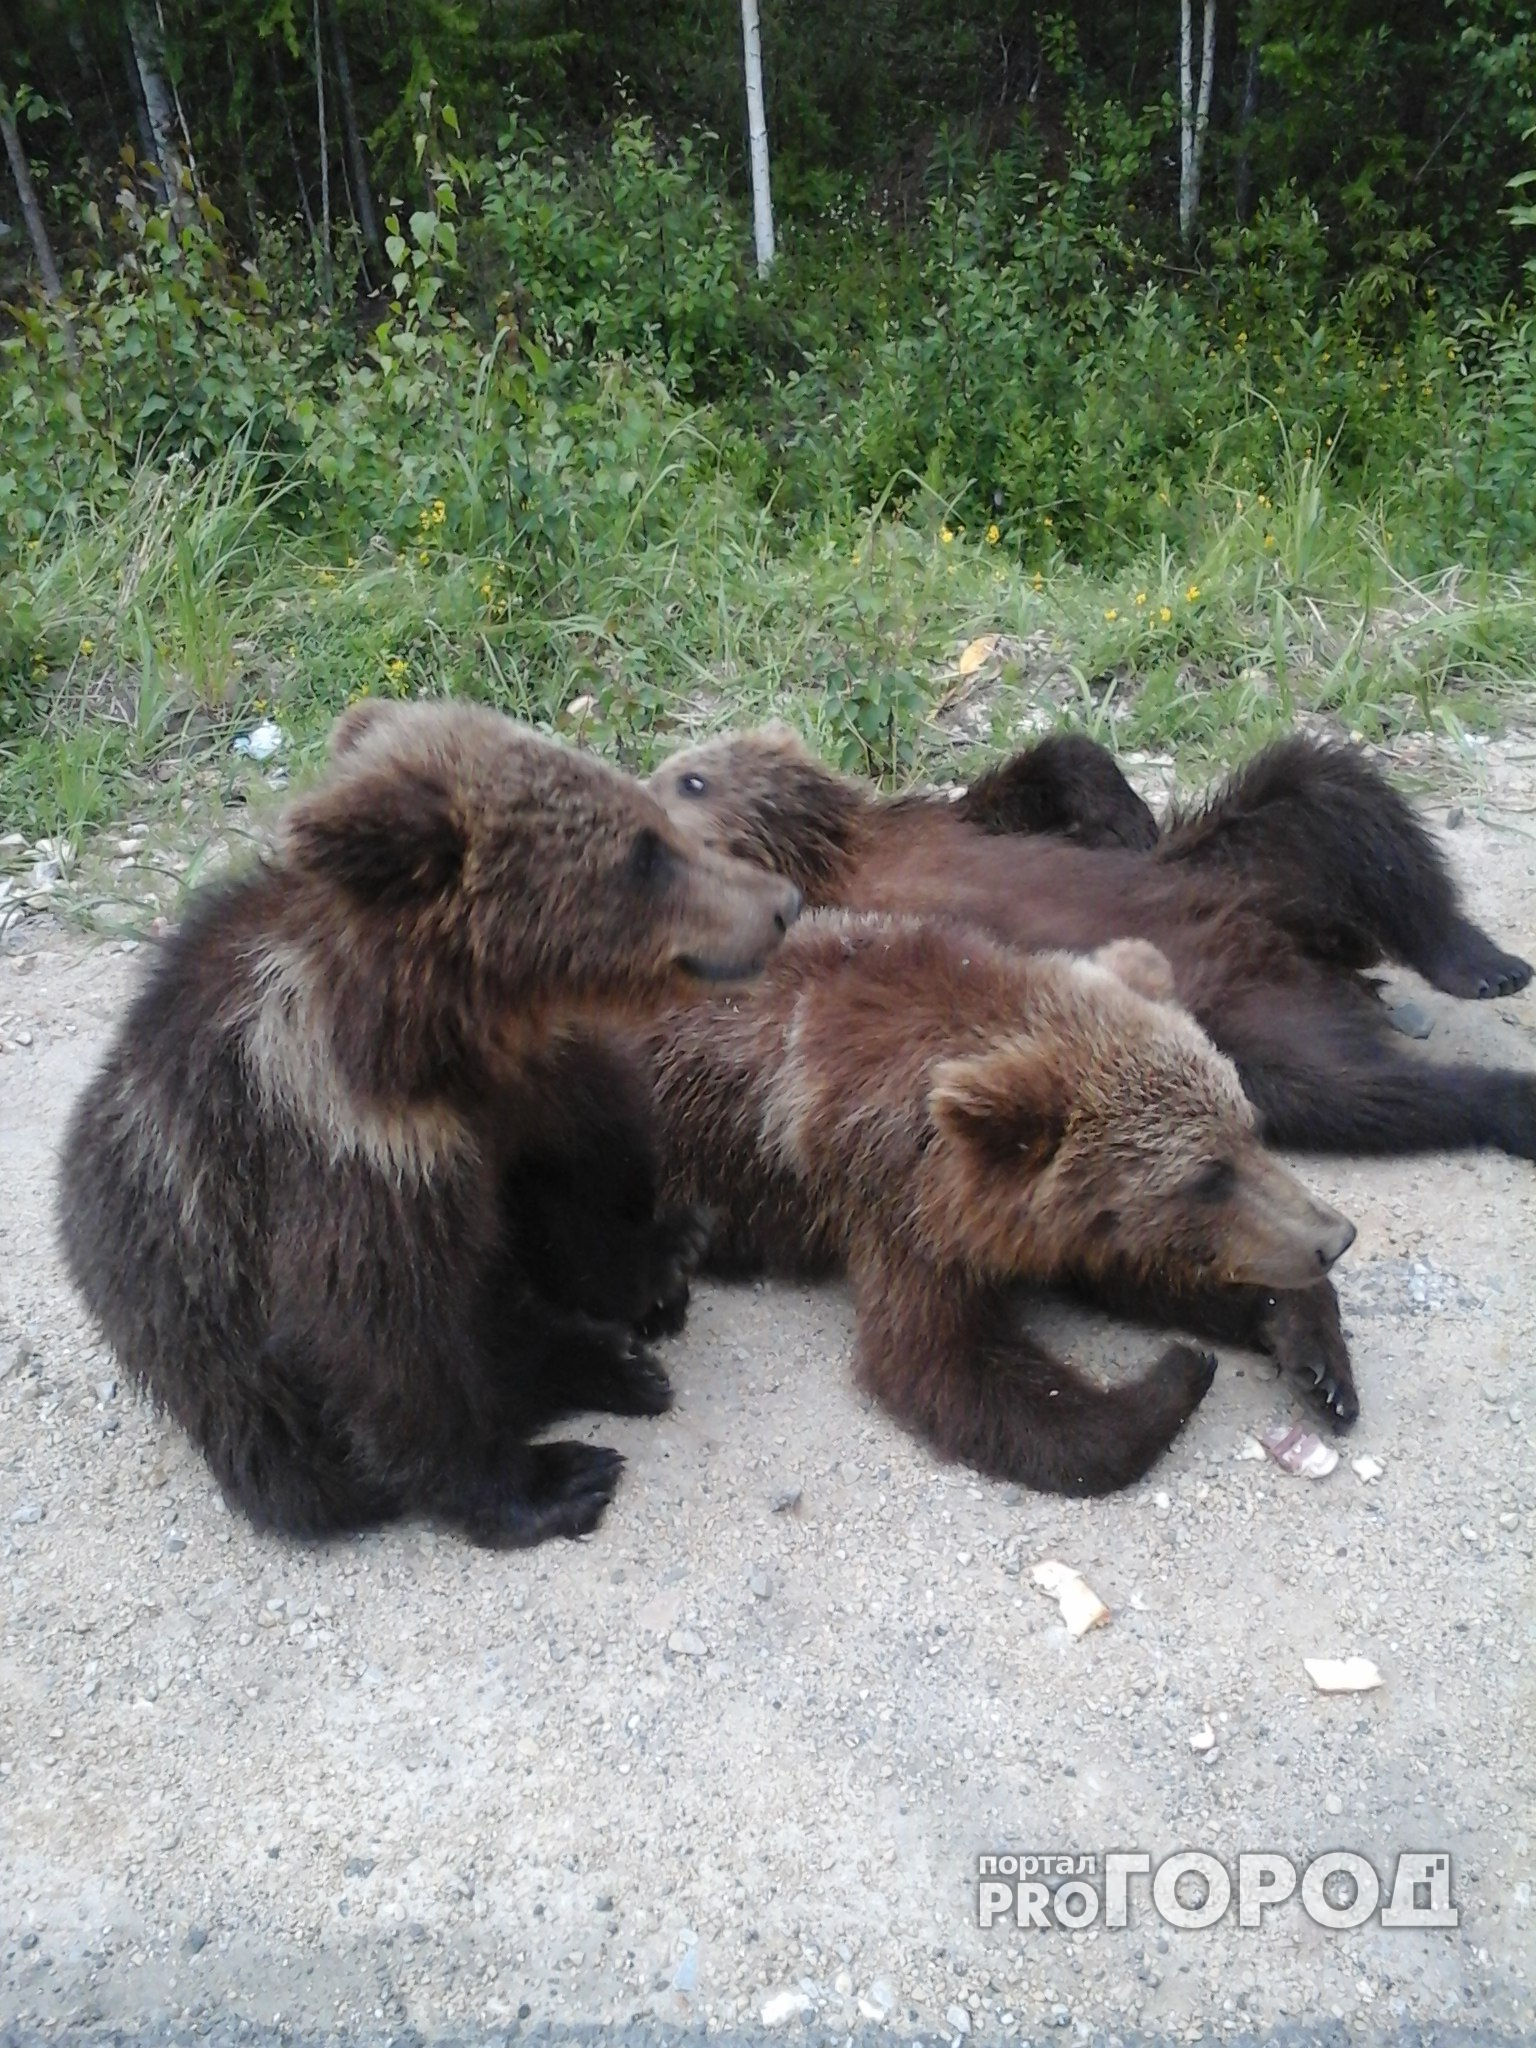 Жители Седью о нападении медведей:”Ходят вокруг поселка, жрут падаль, никого не боятся”